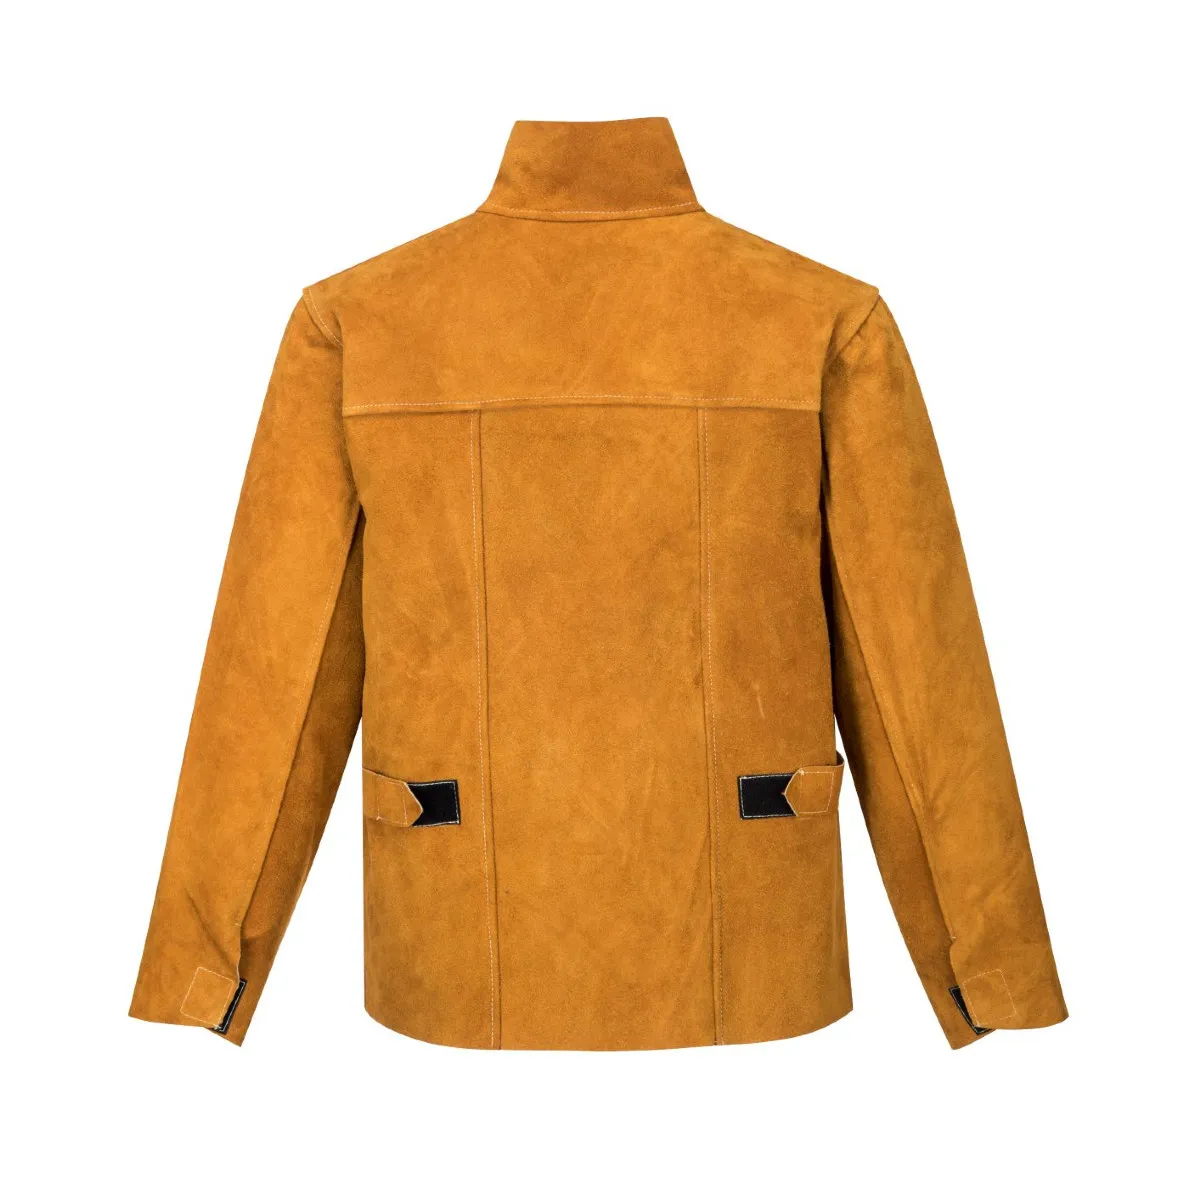 Varilačka jakna SW34 braon - Portwest 